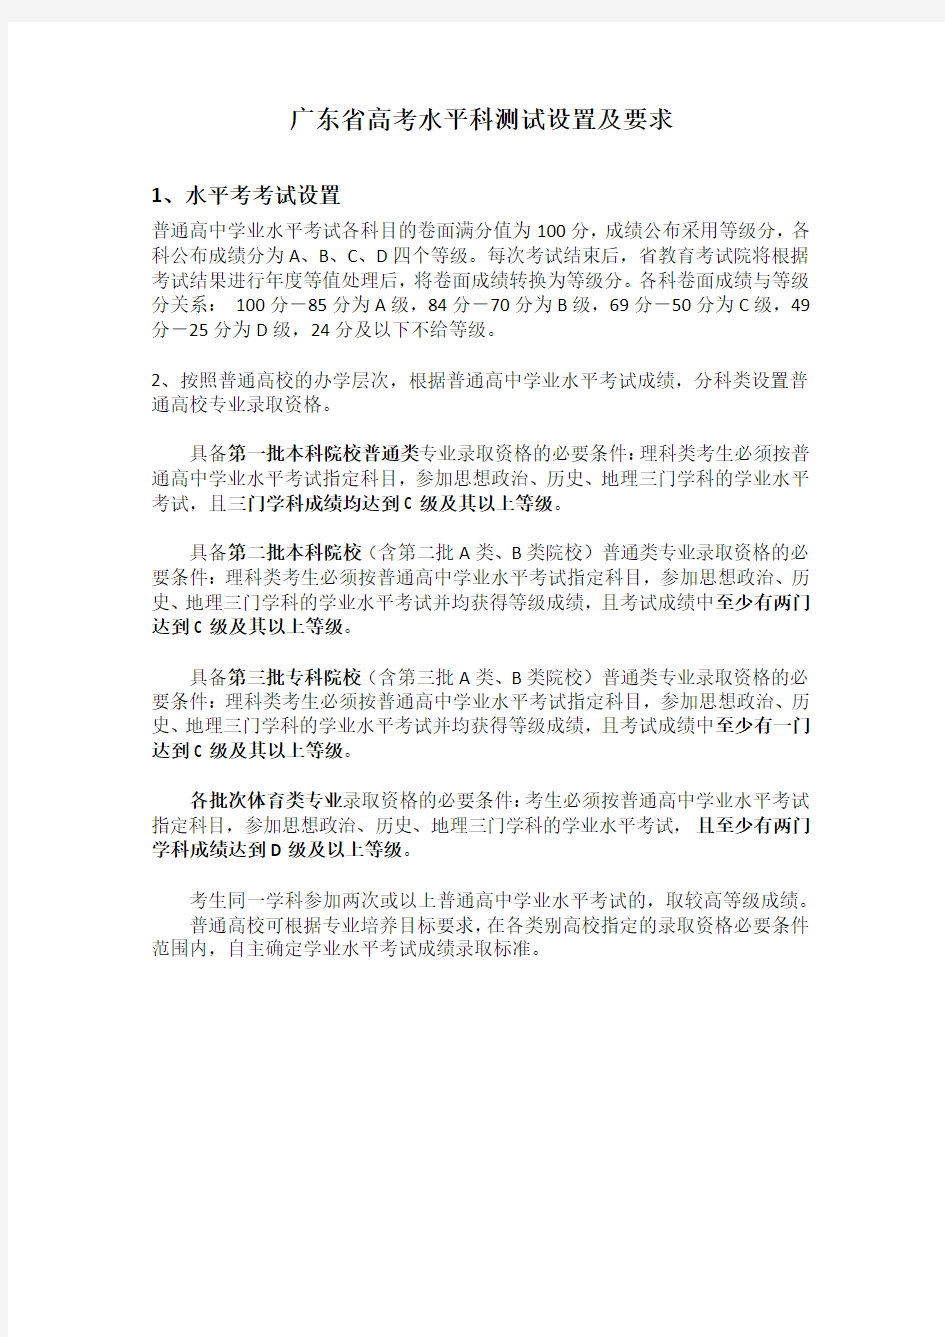 广东省高考水平科测试设置及要求